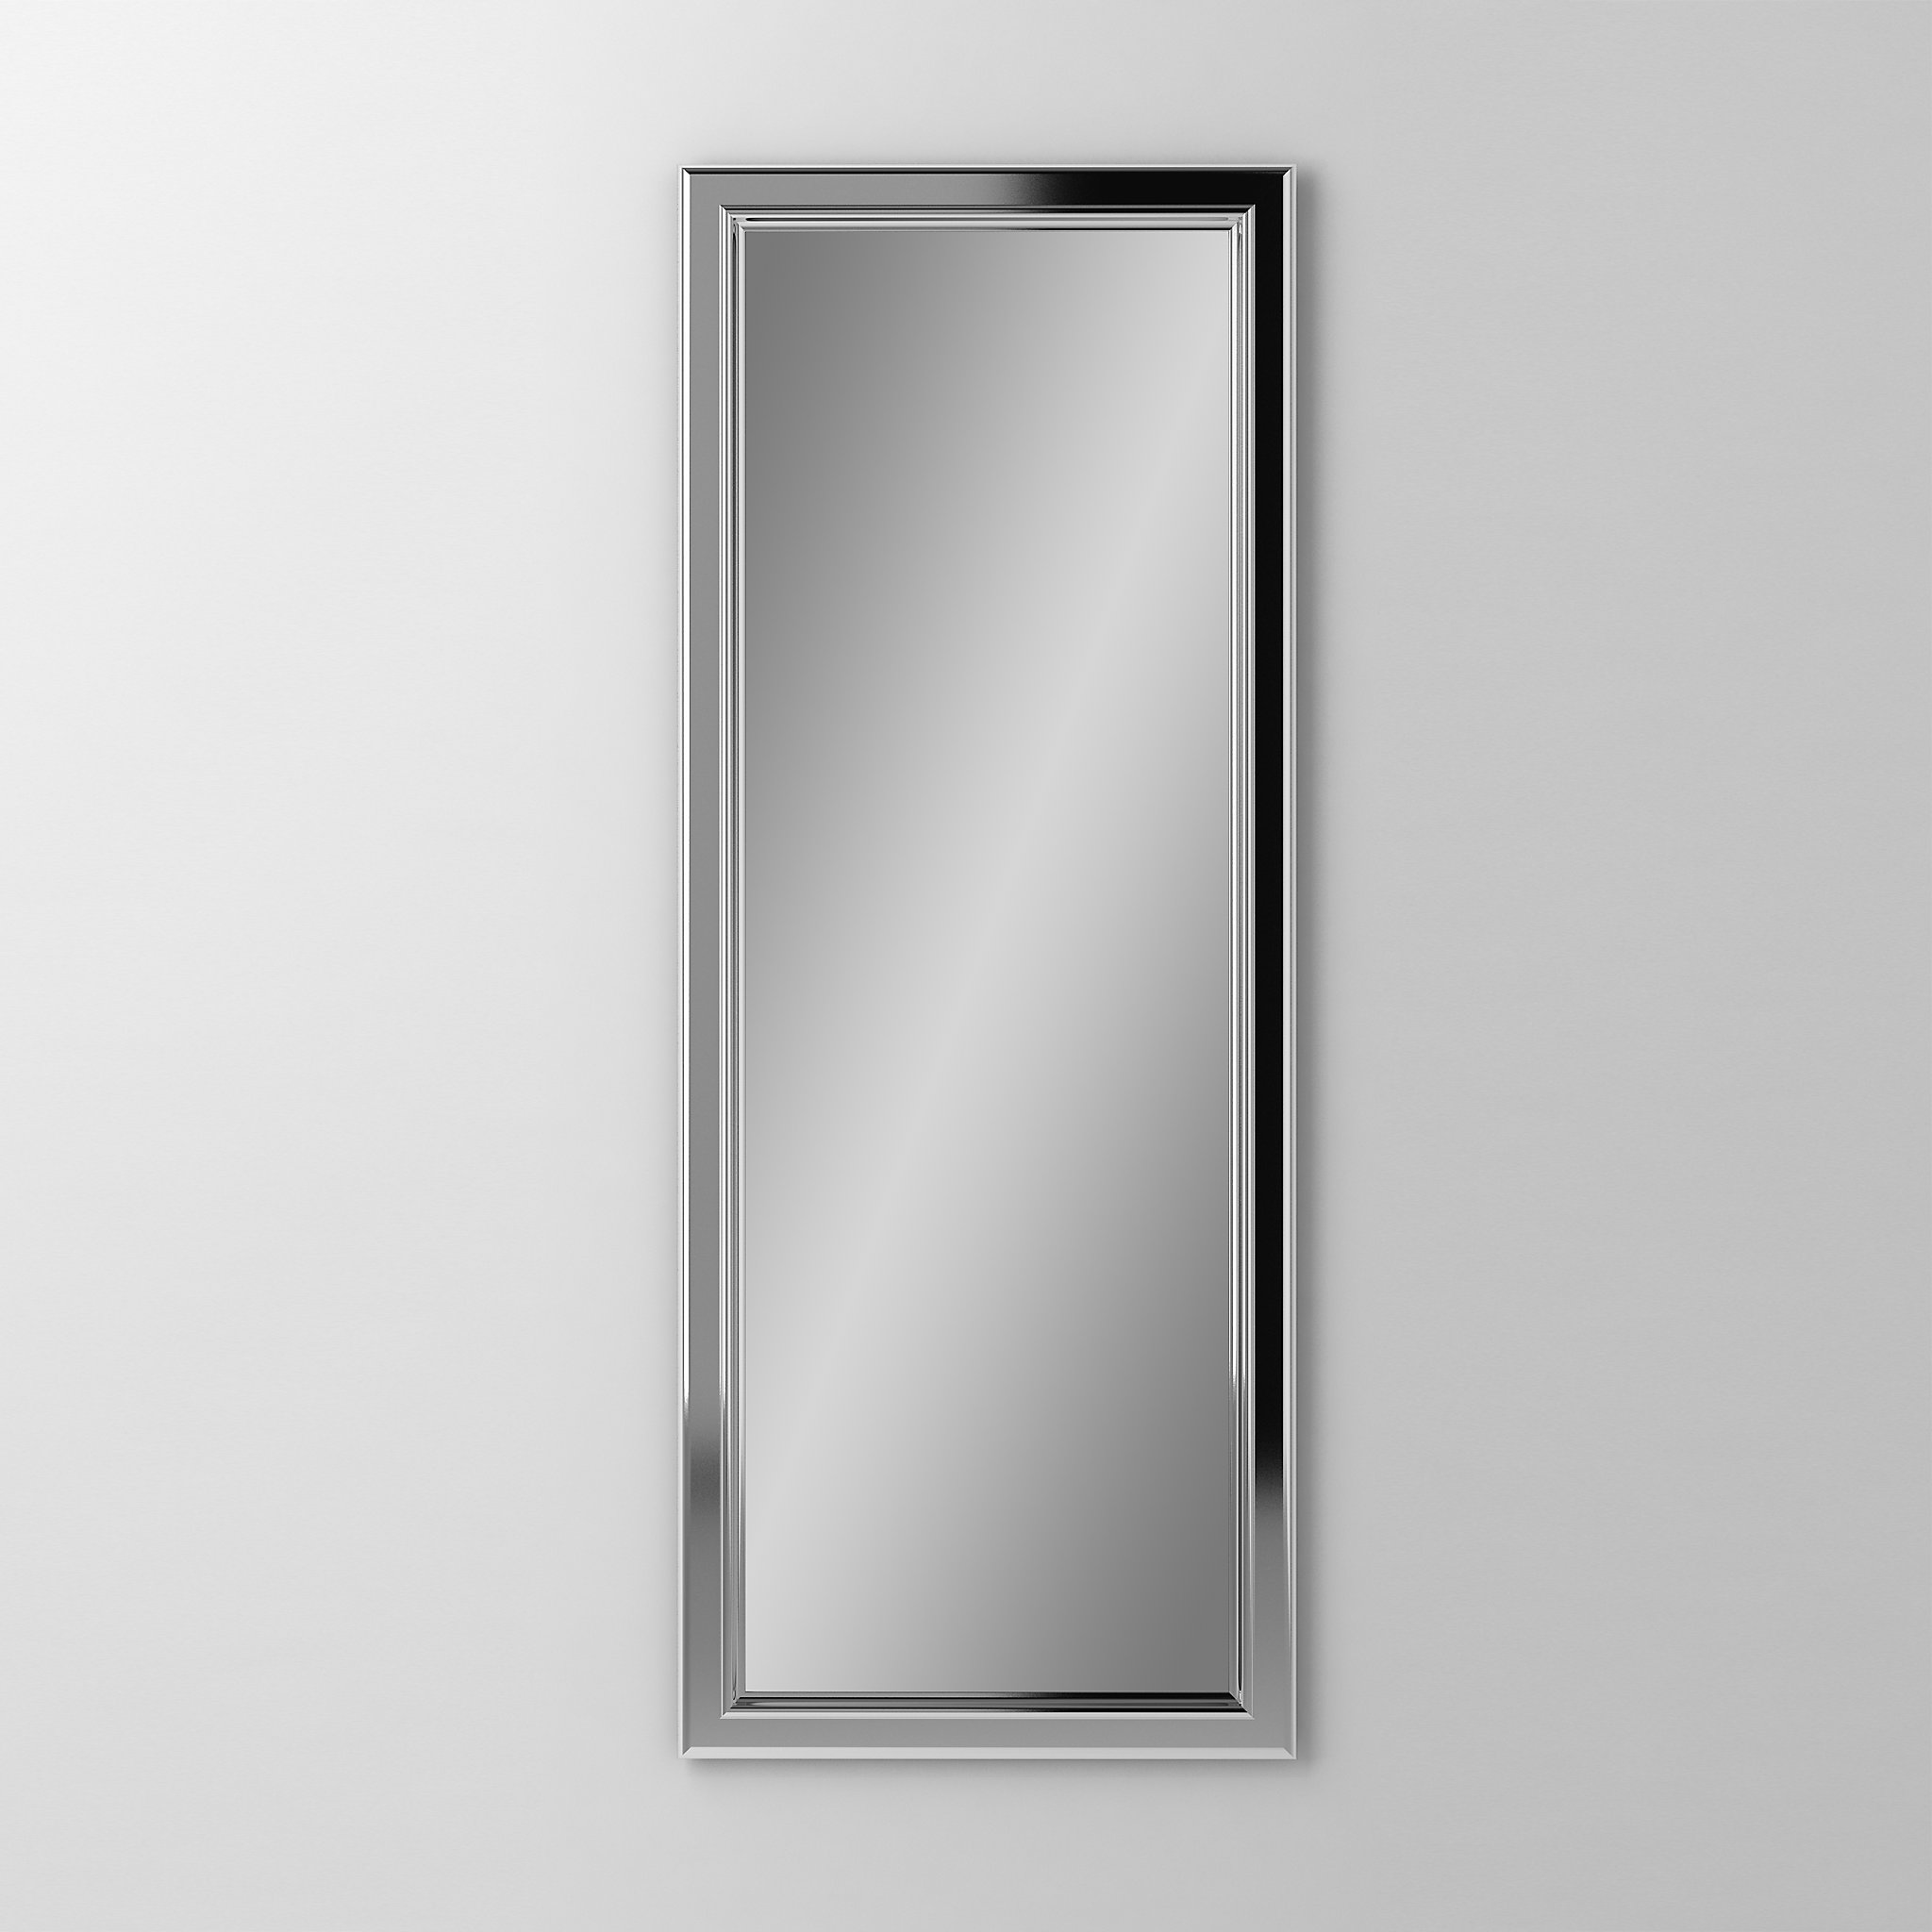 Robern DM2040BM77Main Line Mirror, 20" x 40" x 1-5/8", Bryn Mawr Frame, Polished Nickel